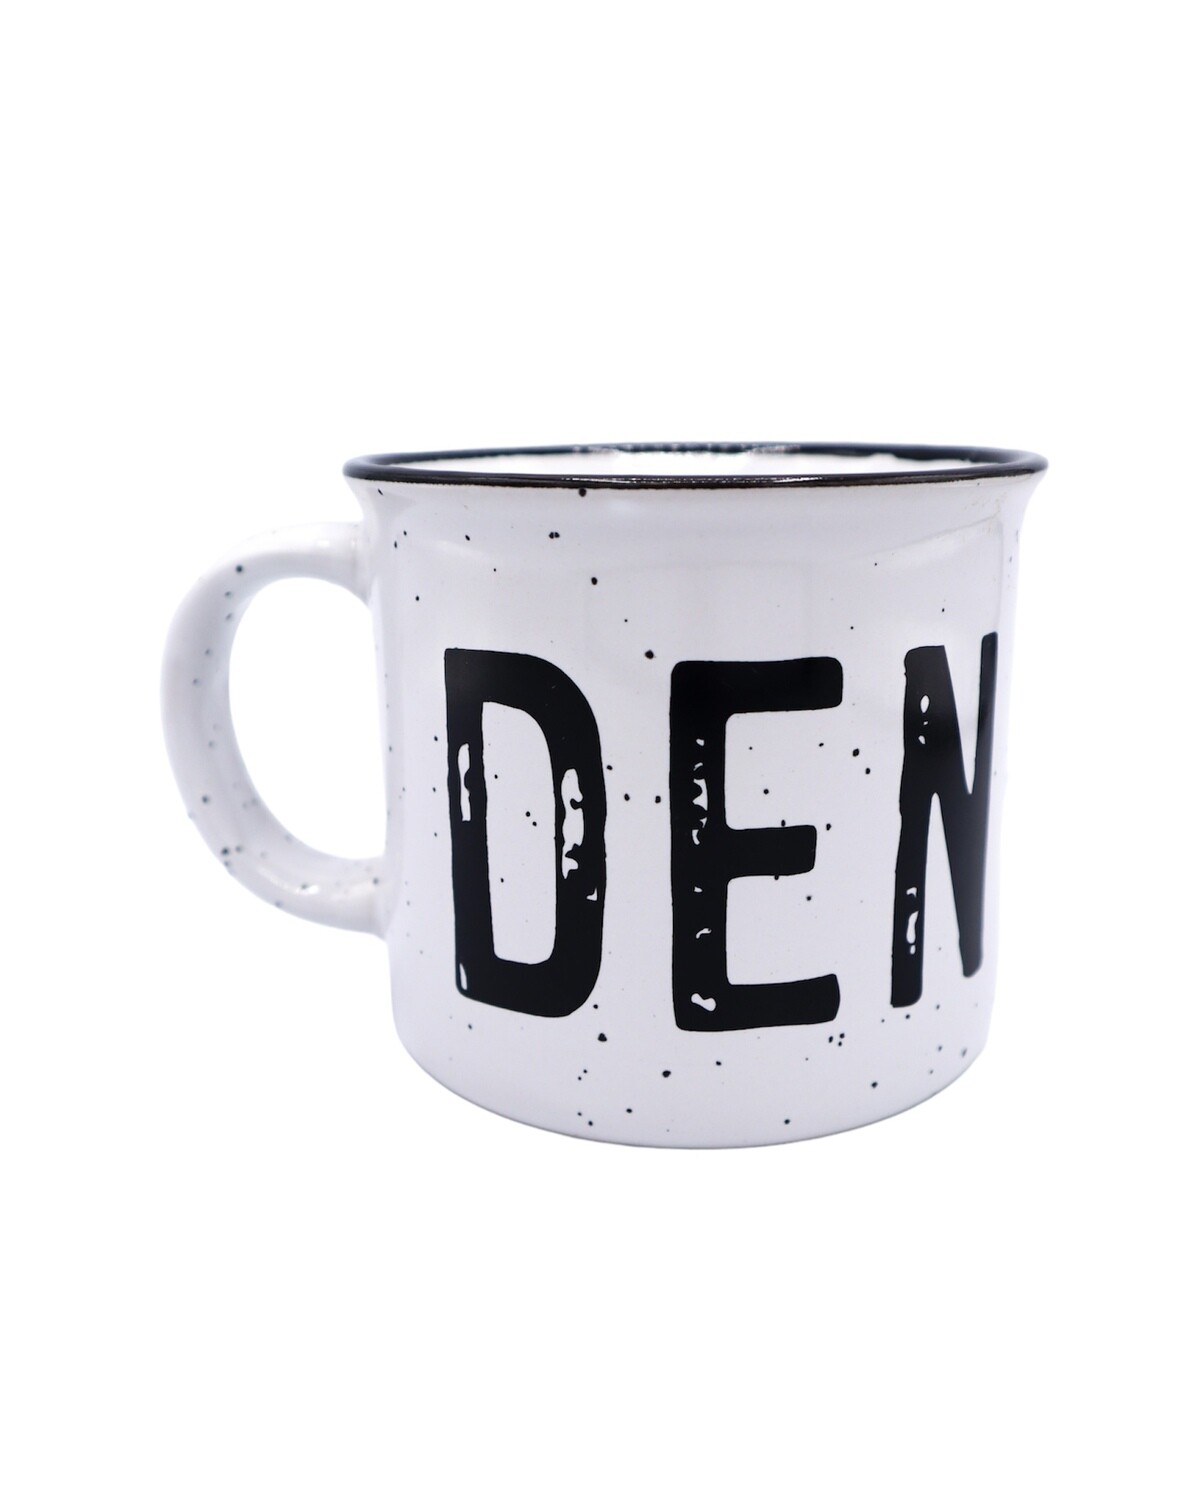 Denton Campfire Mug - White